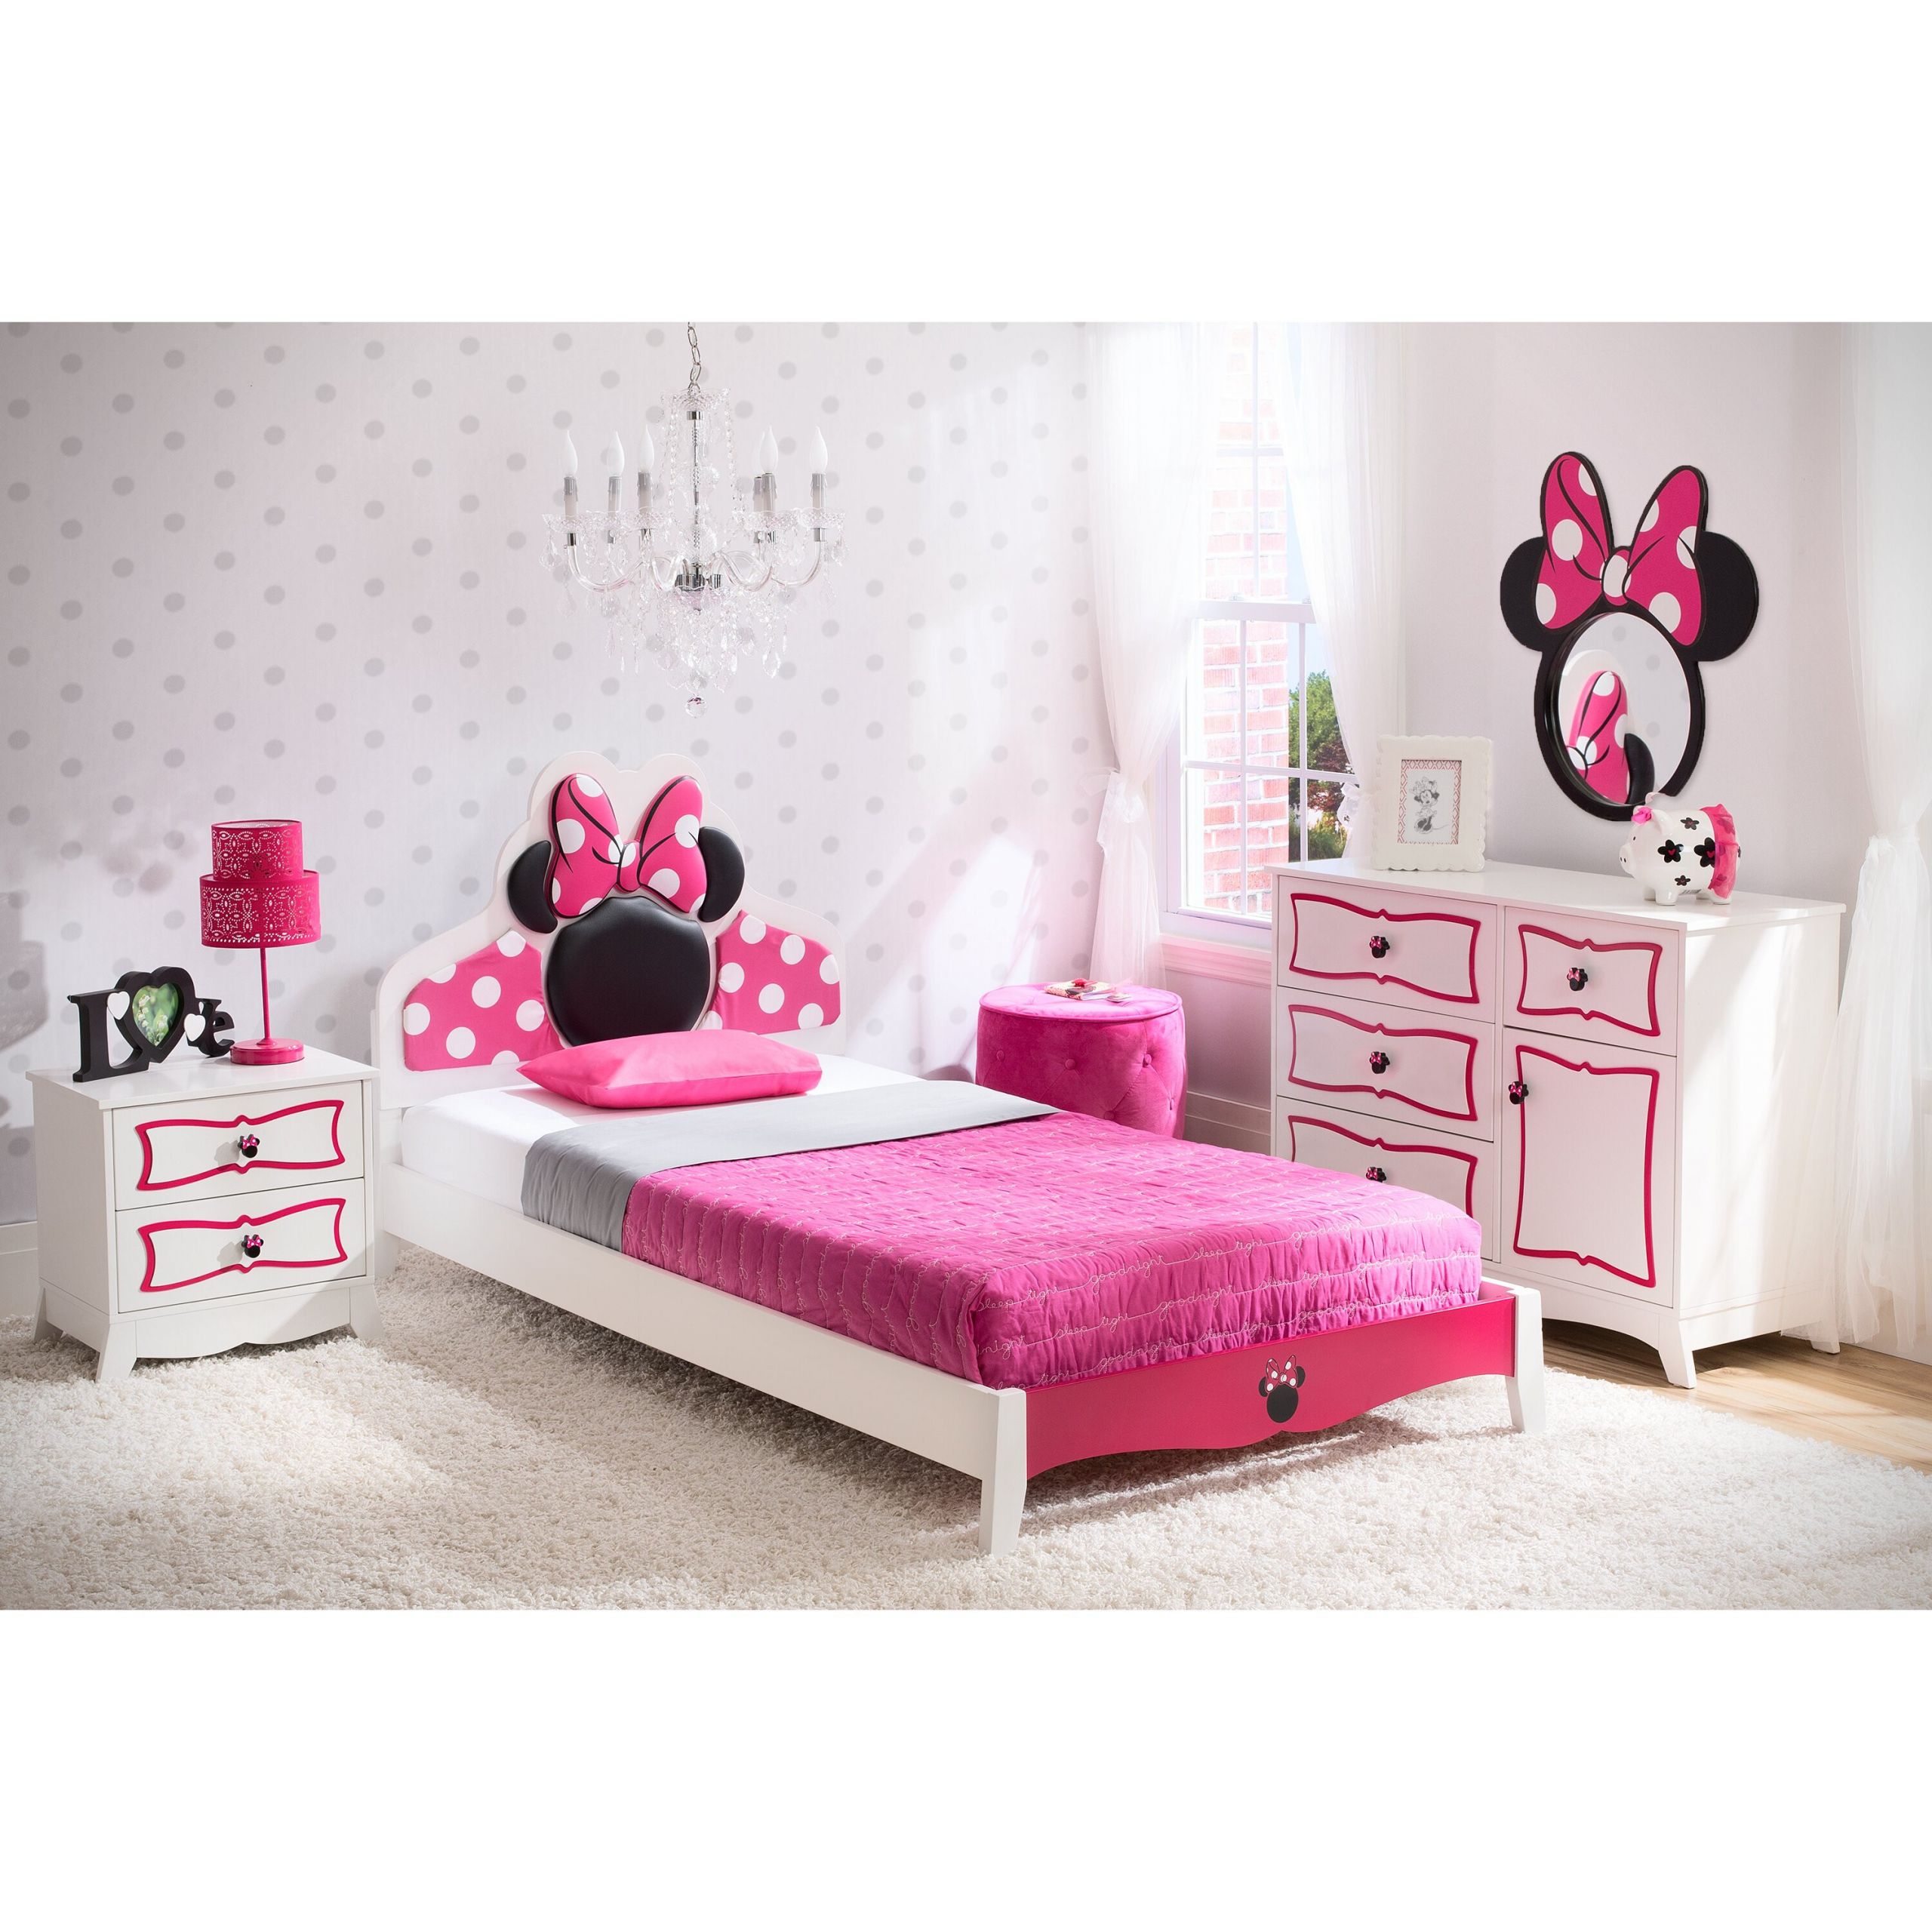 Kids Twin Bedroom Set
 Delta Children Disney Minnie Mouse Panel 4 Piece Bedroom